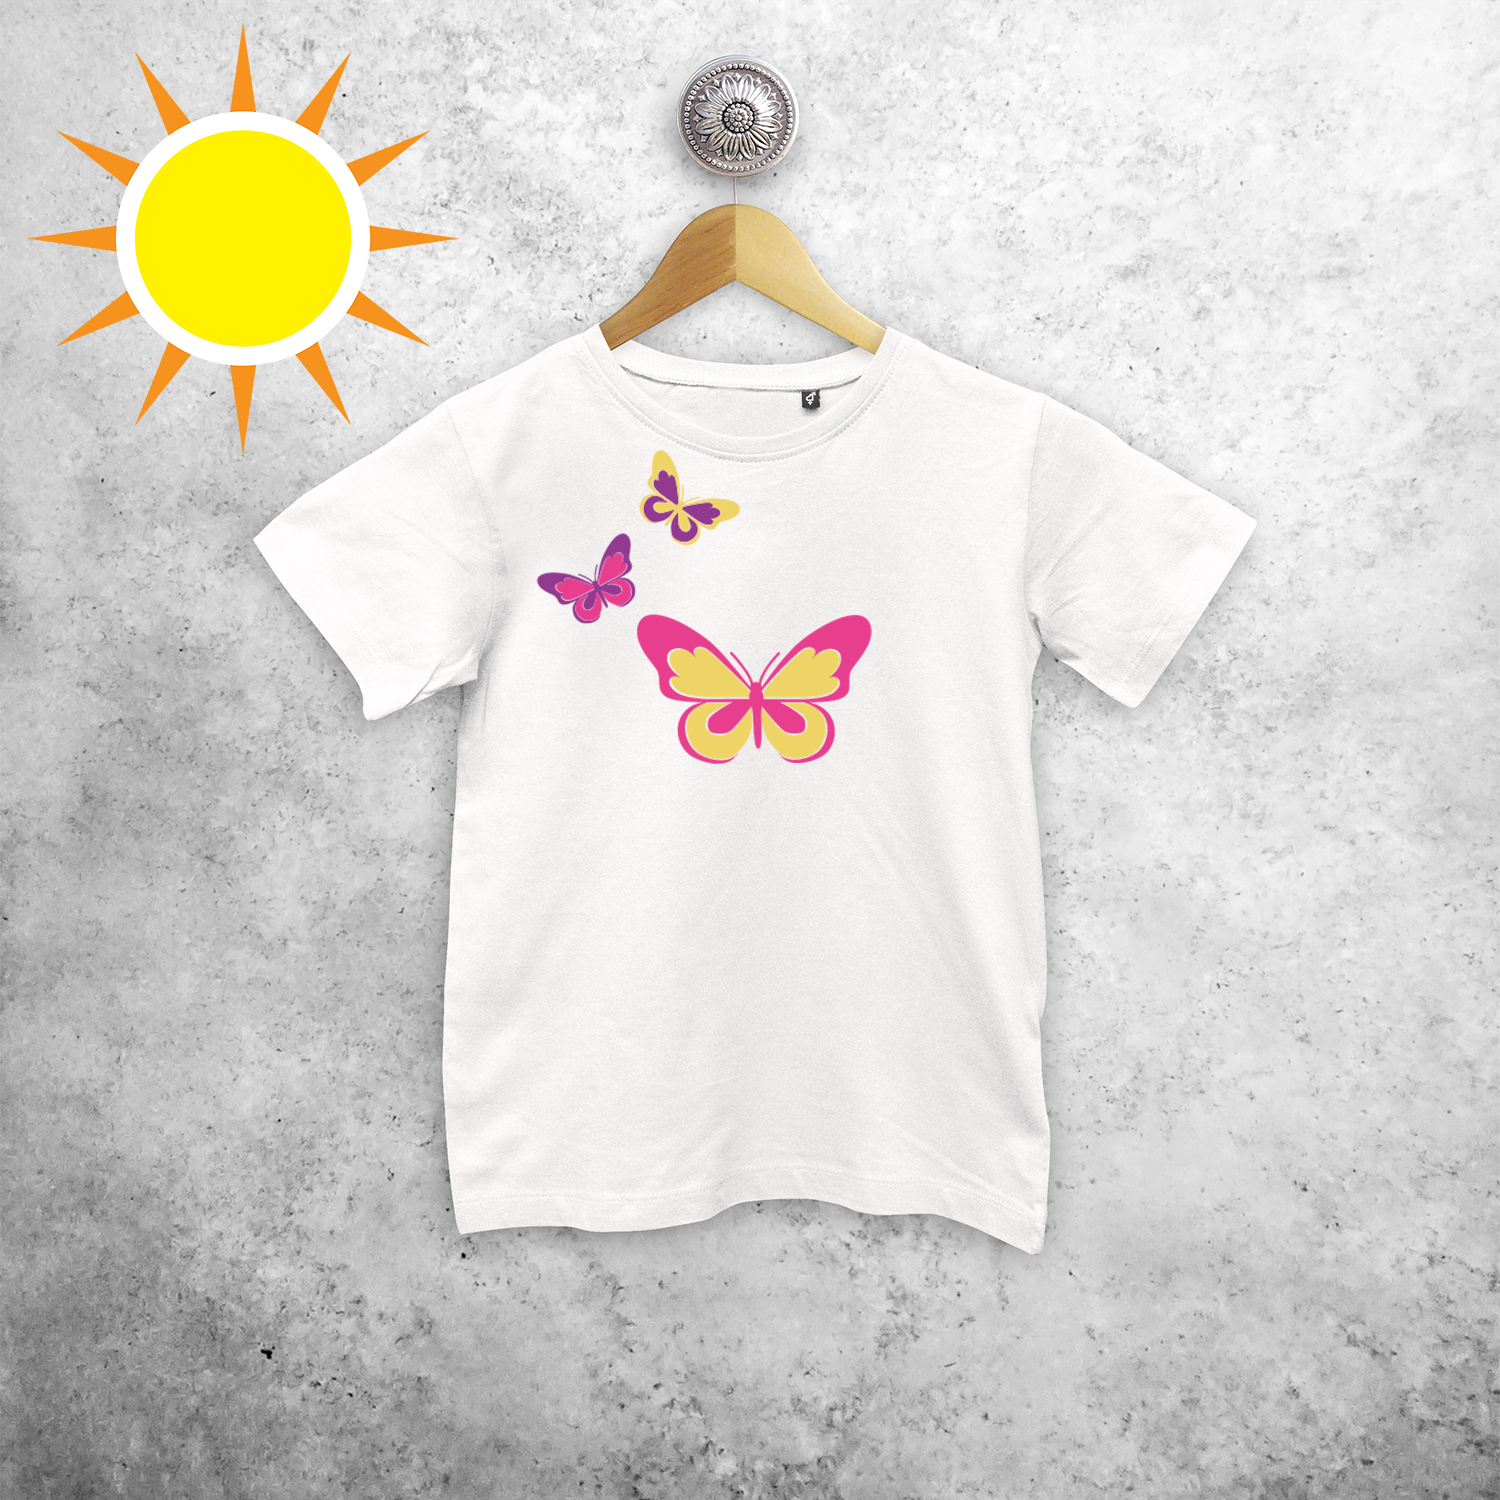 Butterflies magic kids shortsleeve shirt